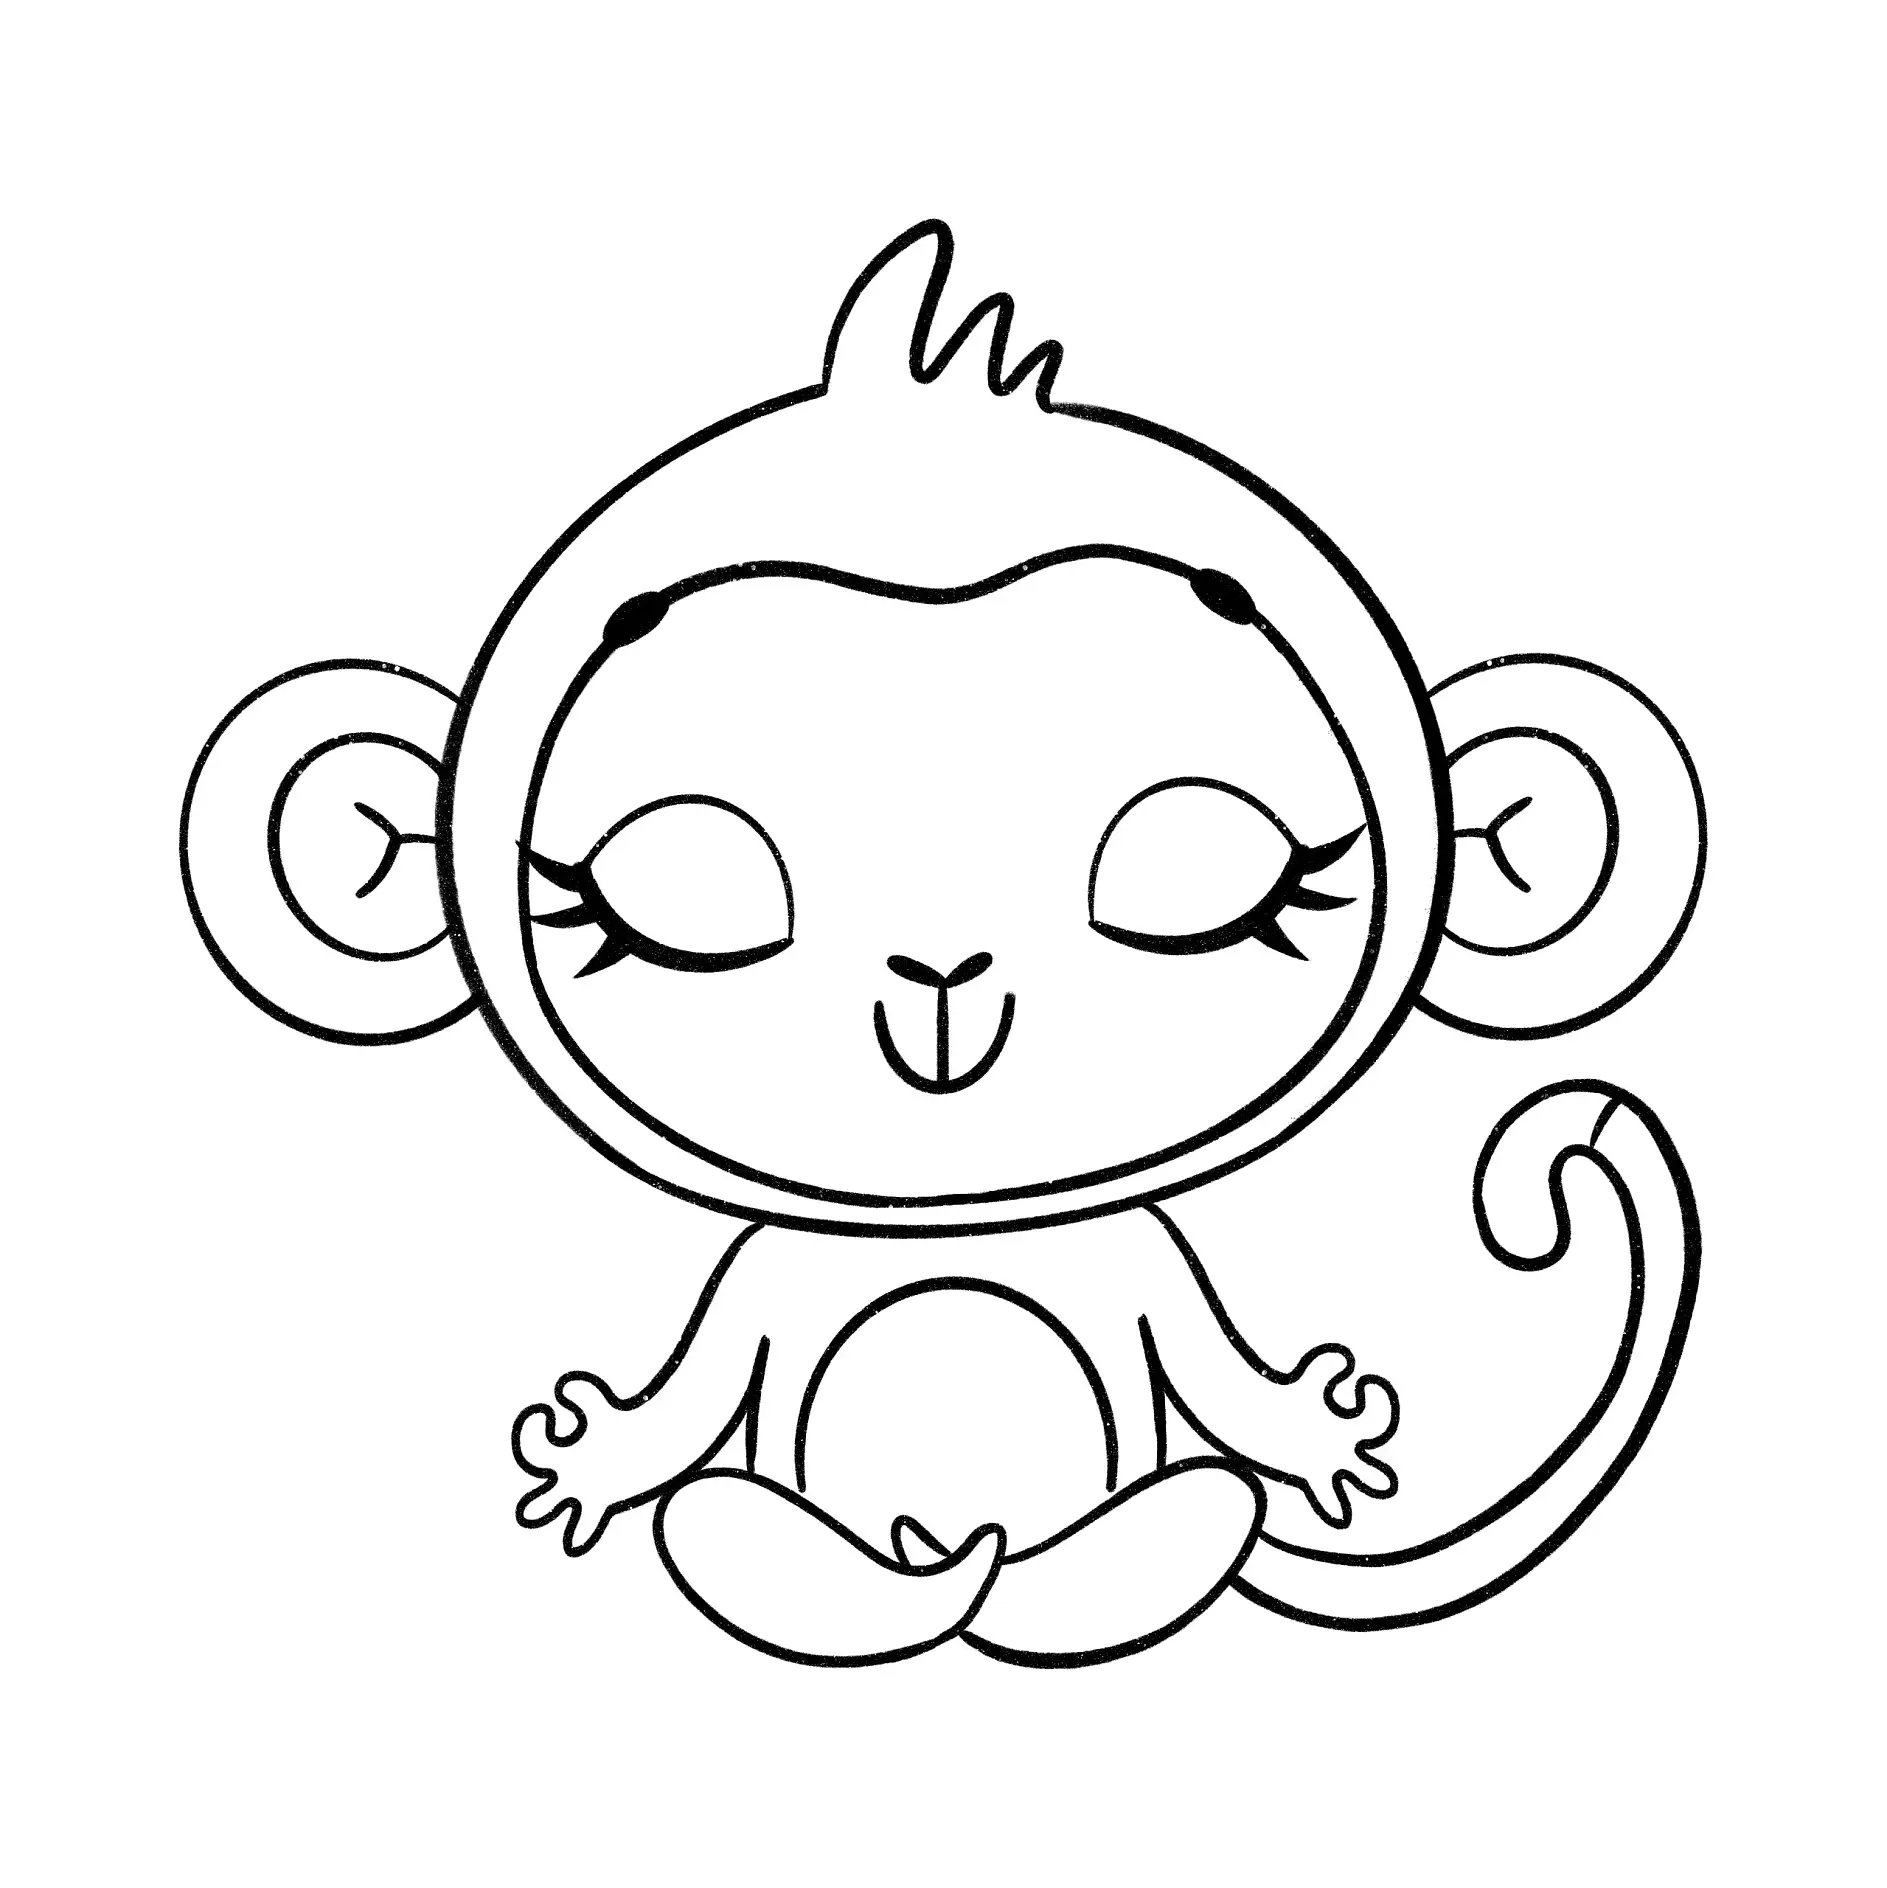 Ausmalbild Affe sitzt meditierend mit geschlossenen Augen